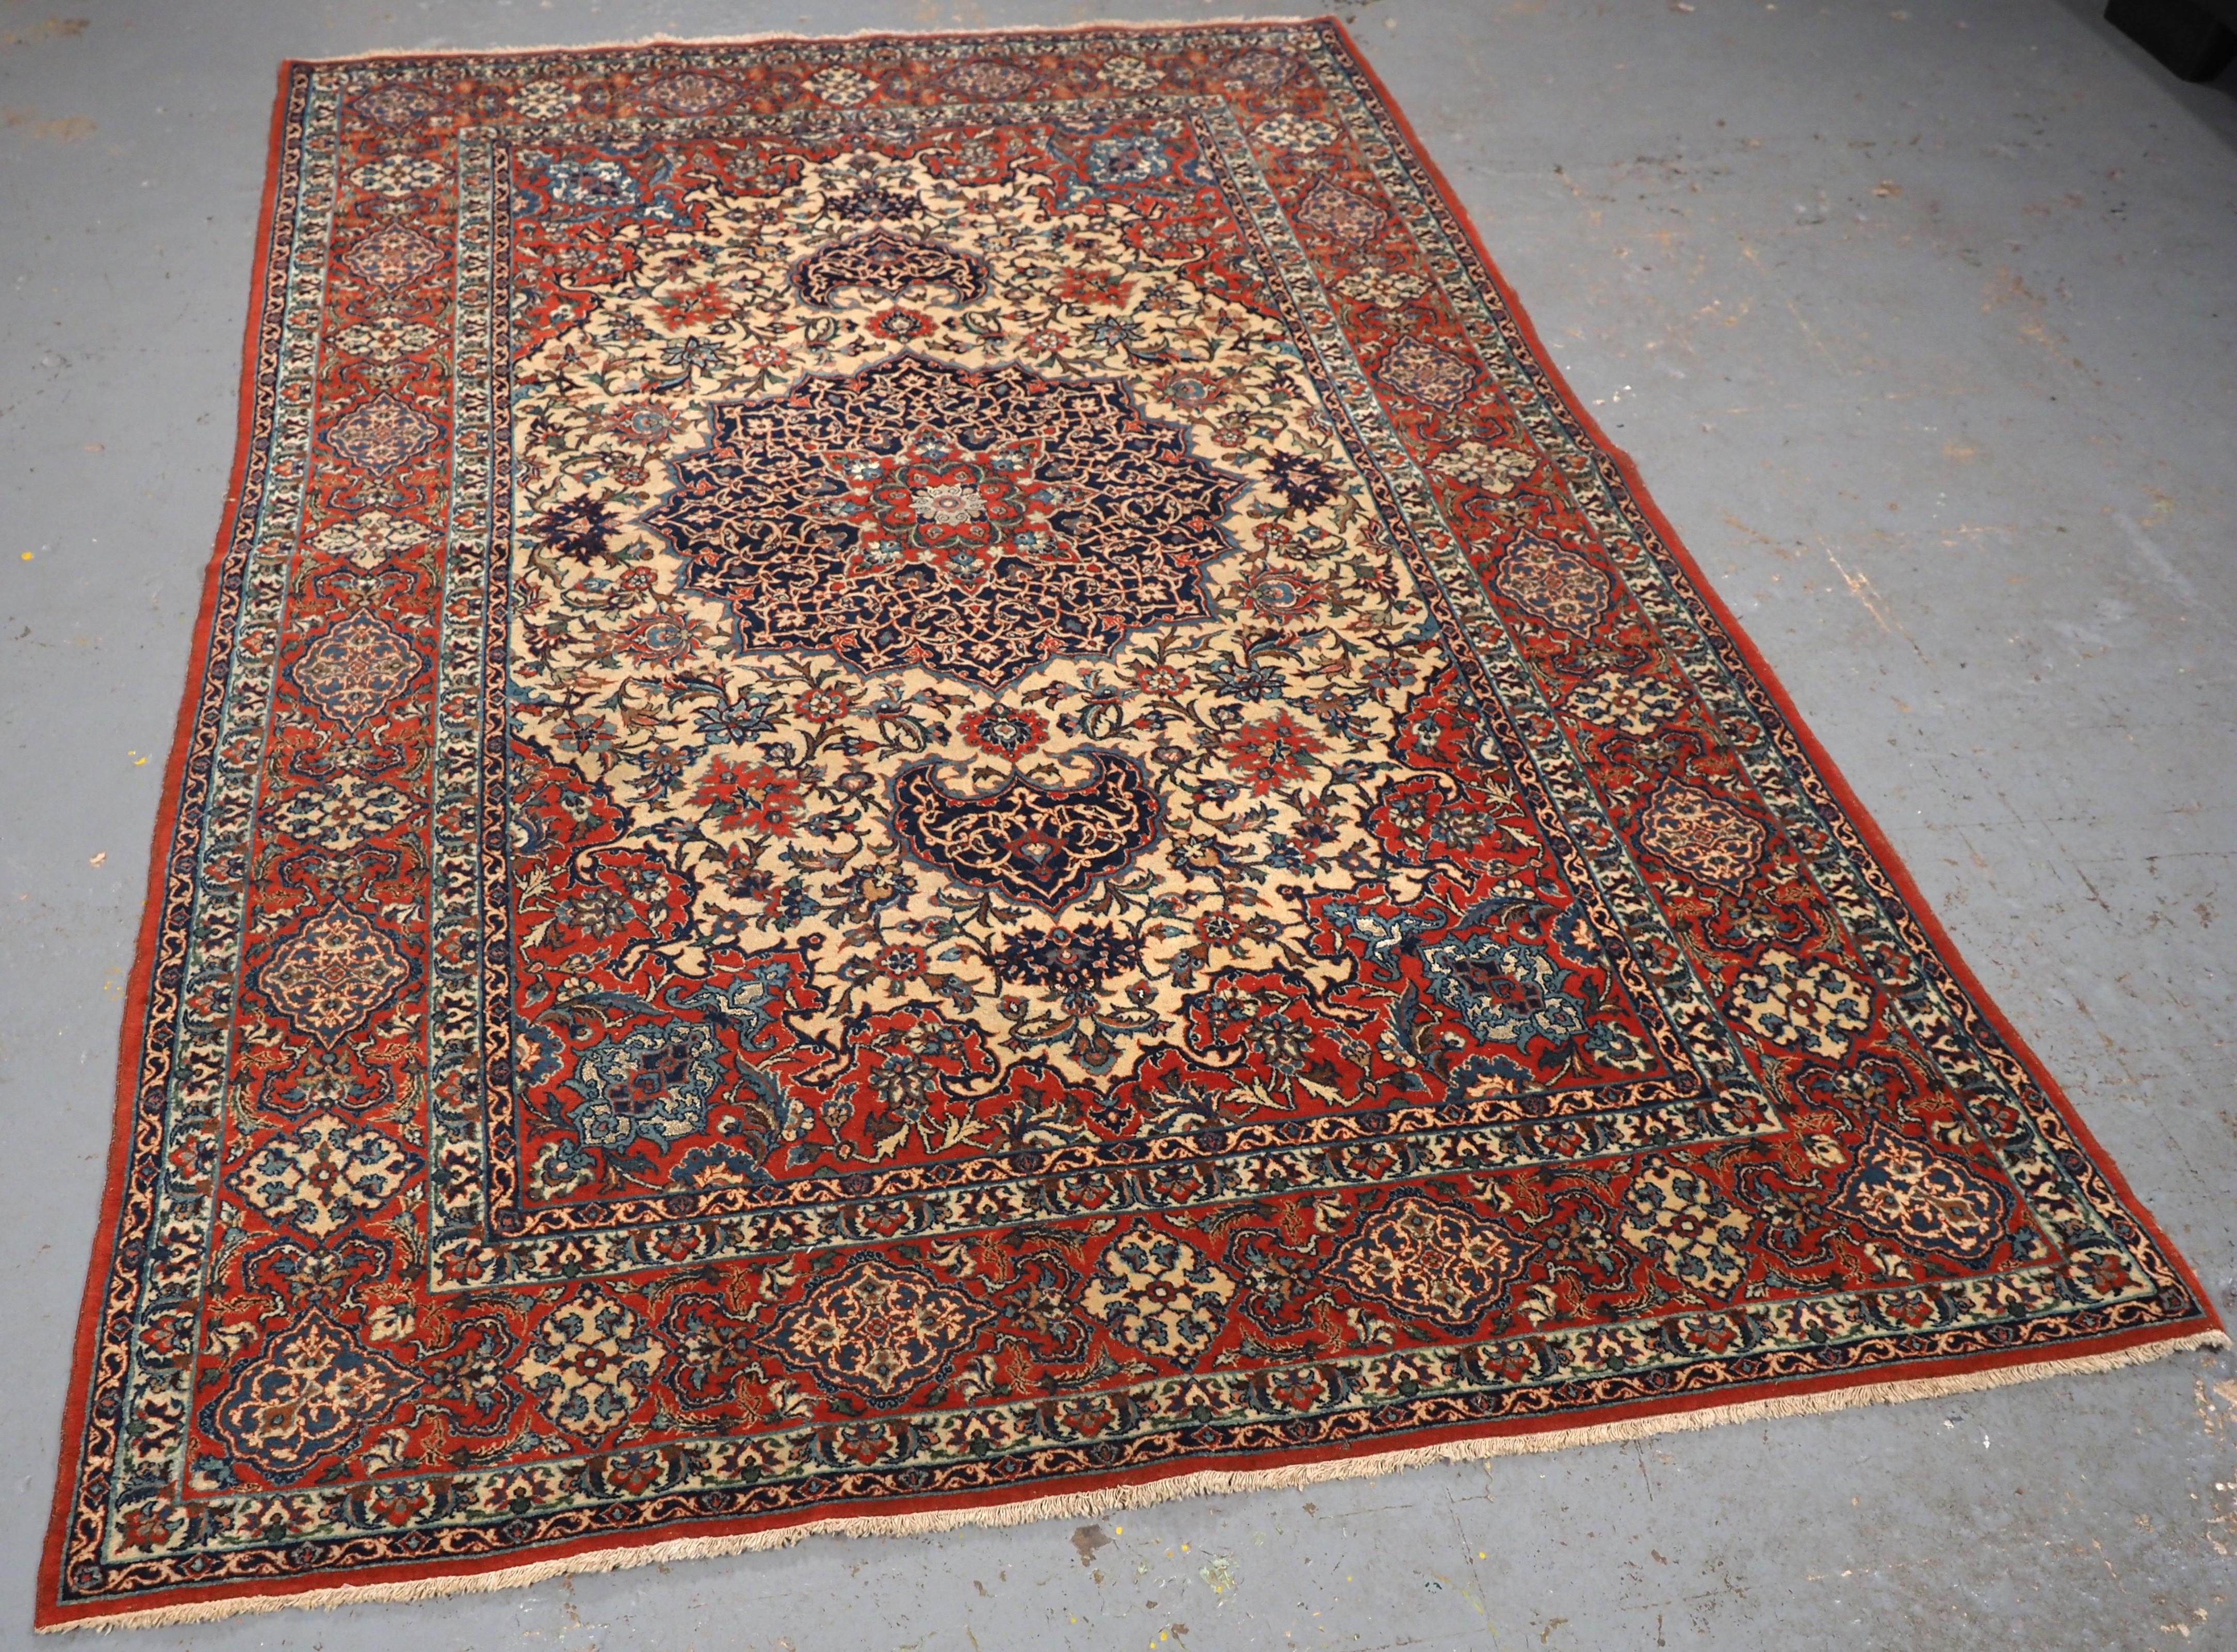 Größe: 6ft 11in x 4ft 9in (210 x 145cm).

Antiker Isfahan-Teppich mit kleinem Medaillonmuster auf elfenbeinfarbenem Grund.

Ca. 1920.

Der Teppich ist aus einem feinen Gewebe mit Lammwolle Flor auf einem feinen Baumwollbasis, hat der Teppich ein